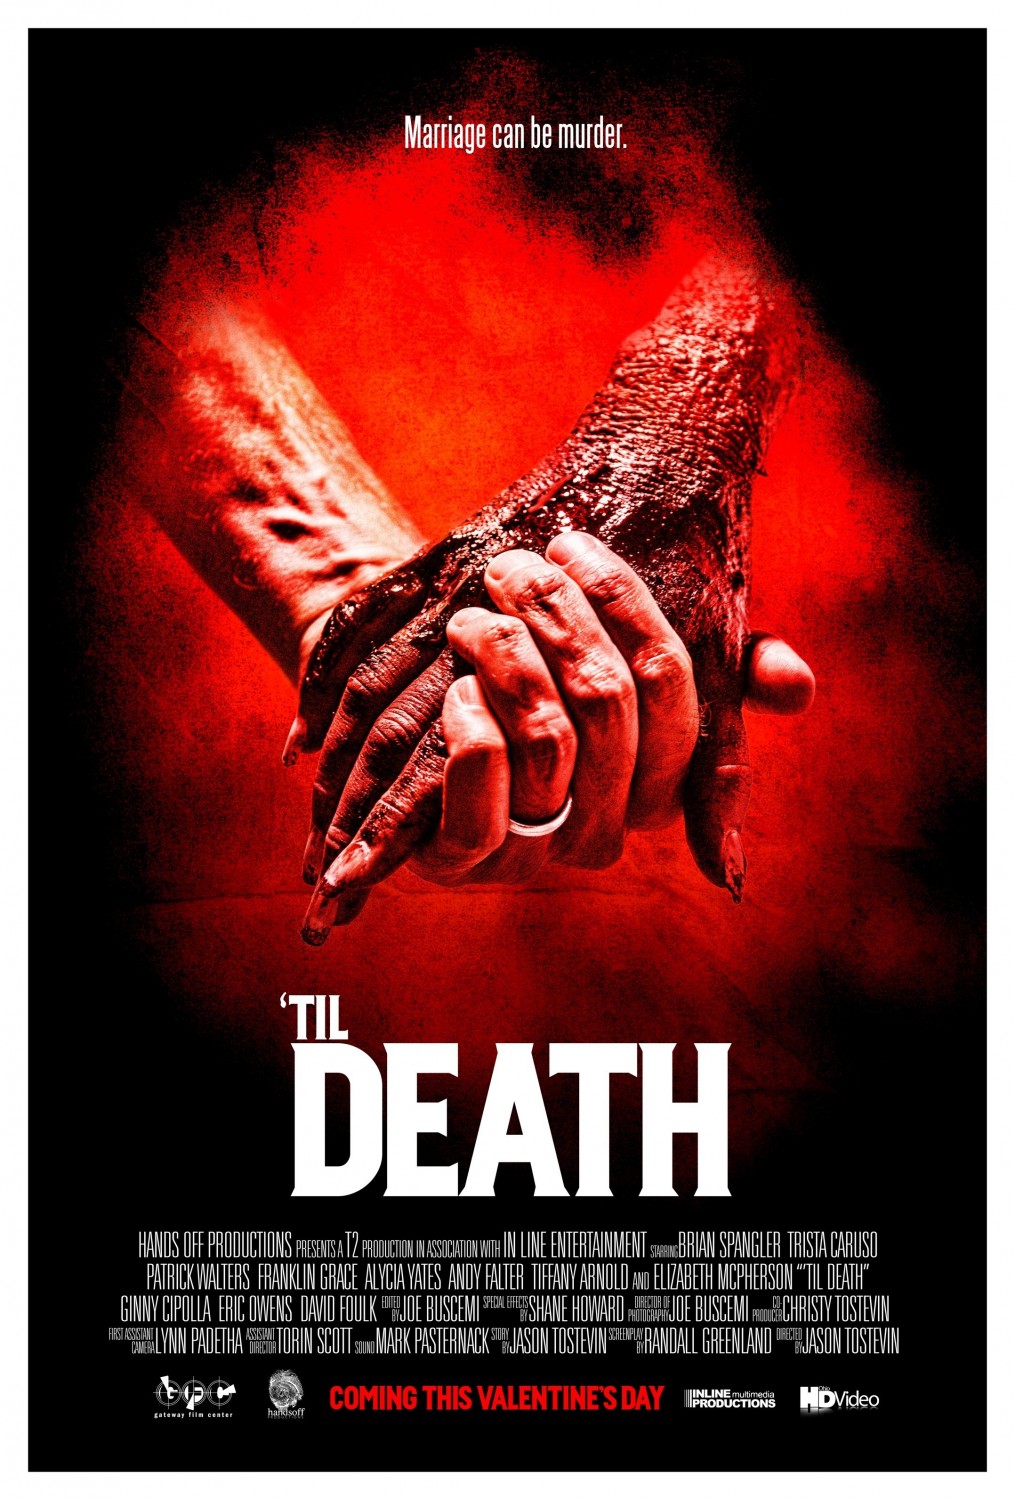 Extra Large Movie Poster Image for 'Til Death